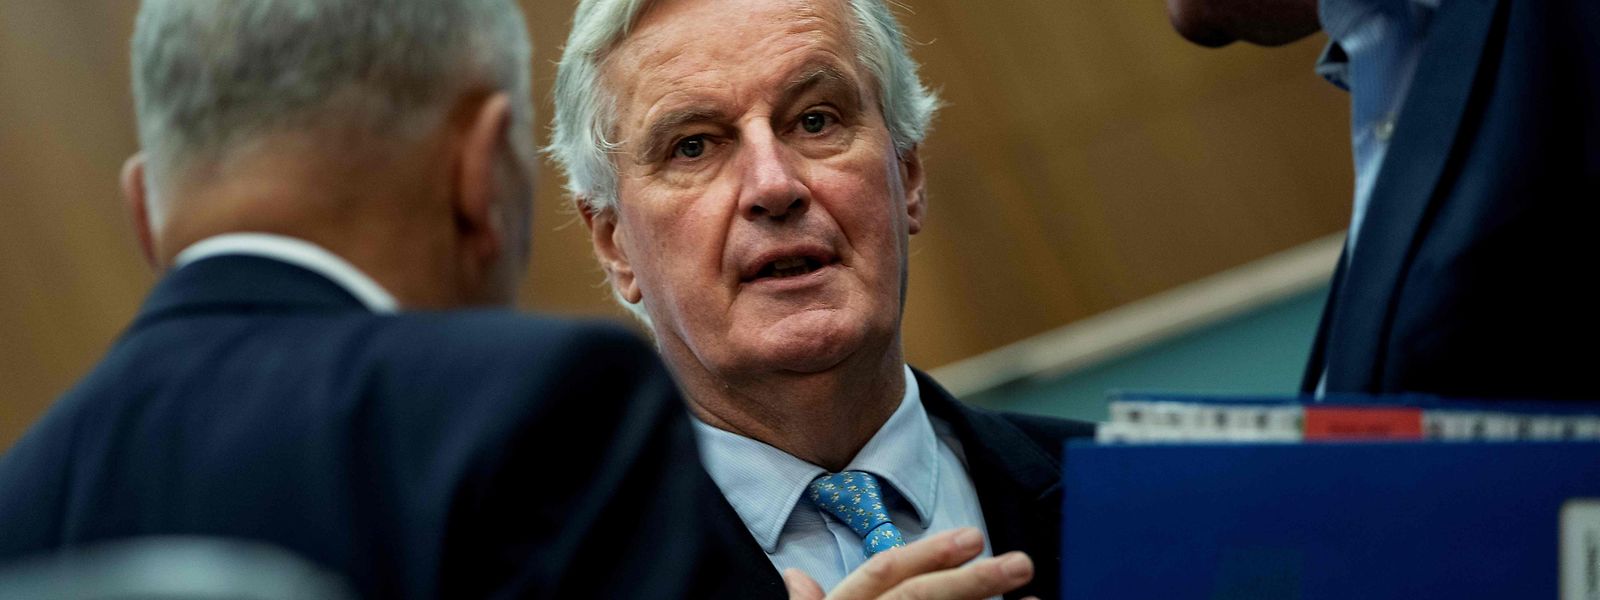 Michel Barnier sieht noch ungelöste Probleme.